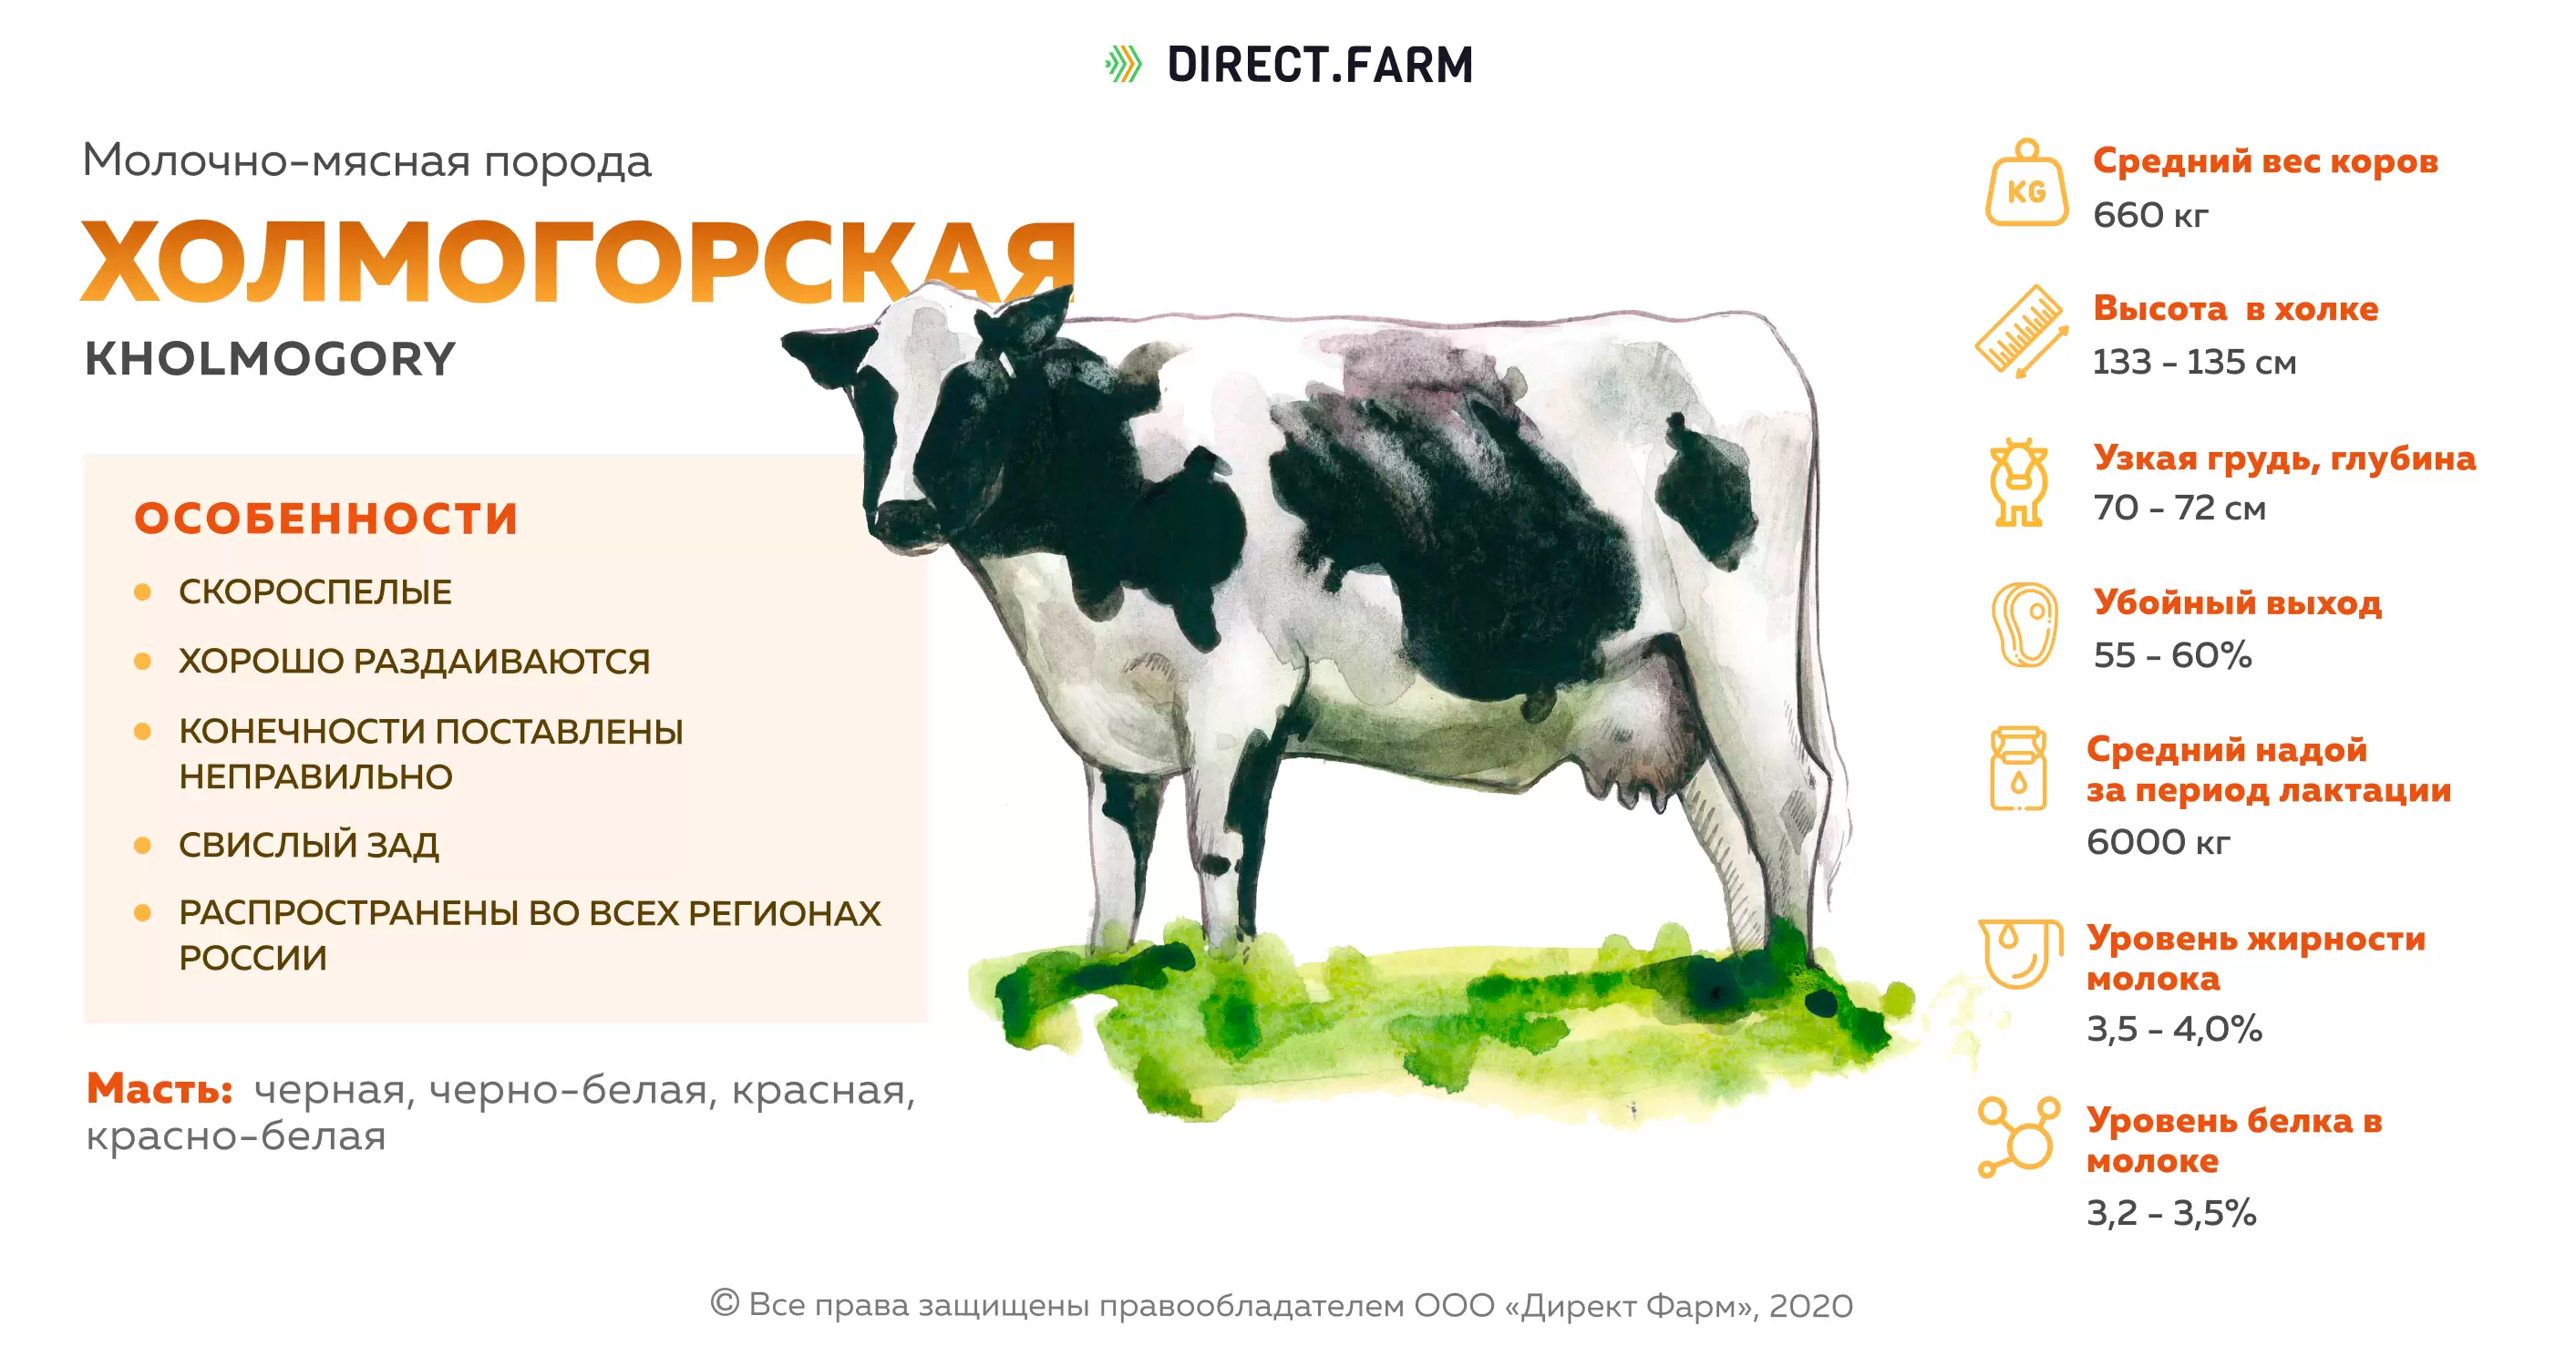 Холмогорская порода коров: характеристика быков и телят, плюсы и минусы (29 фото)